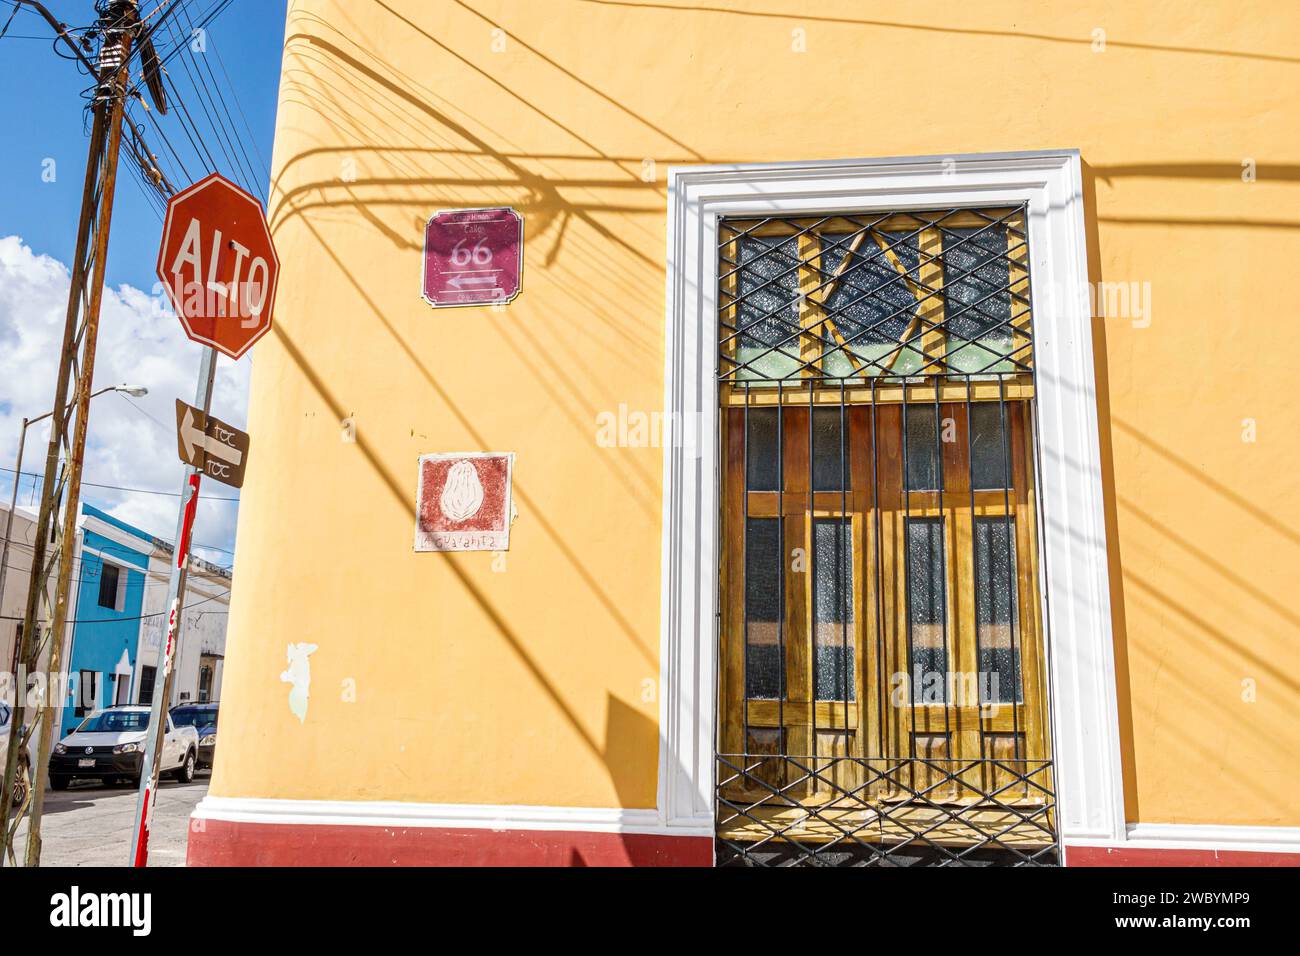 Merida Mexico, centro storico, Calle 66, segnale di stop giallo, architettura urbana, cancello di sicurezza in ferro battuto, doppia Foto Stock